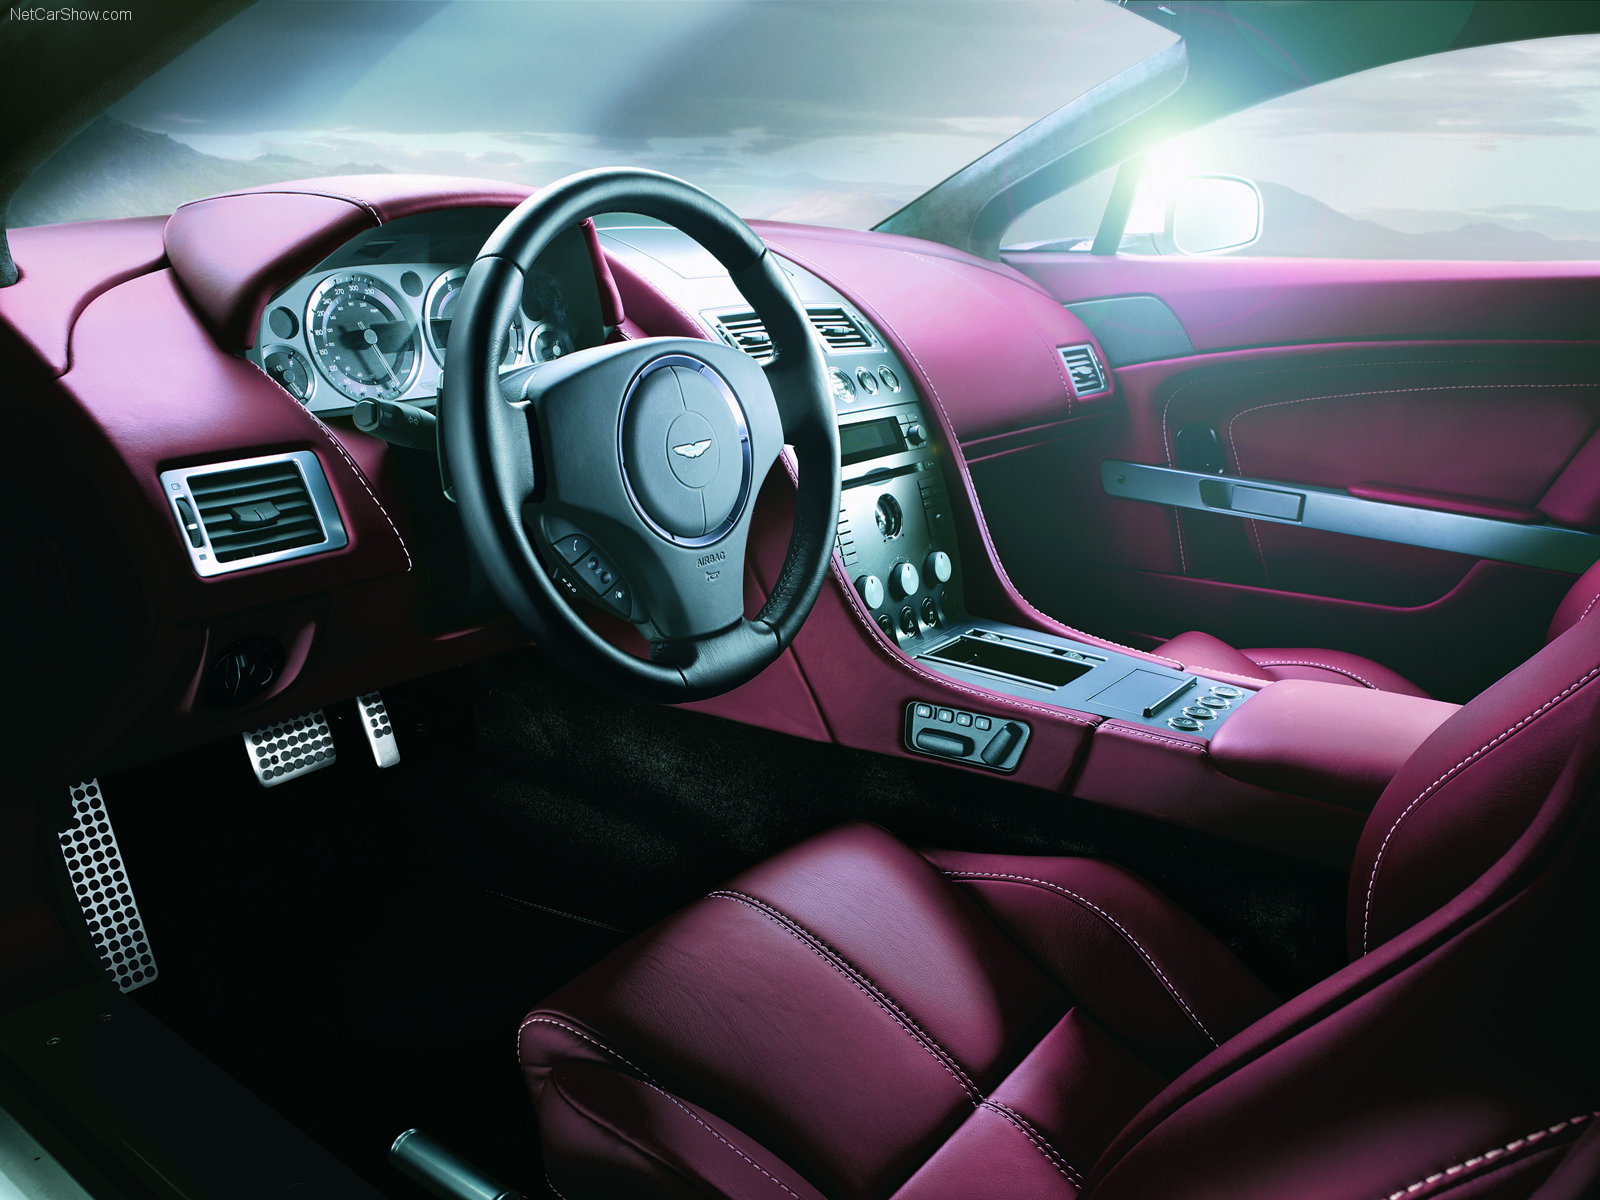 Laden Sie Aston Martin HD-Desktop-Hintergründe herunter